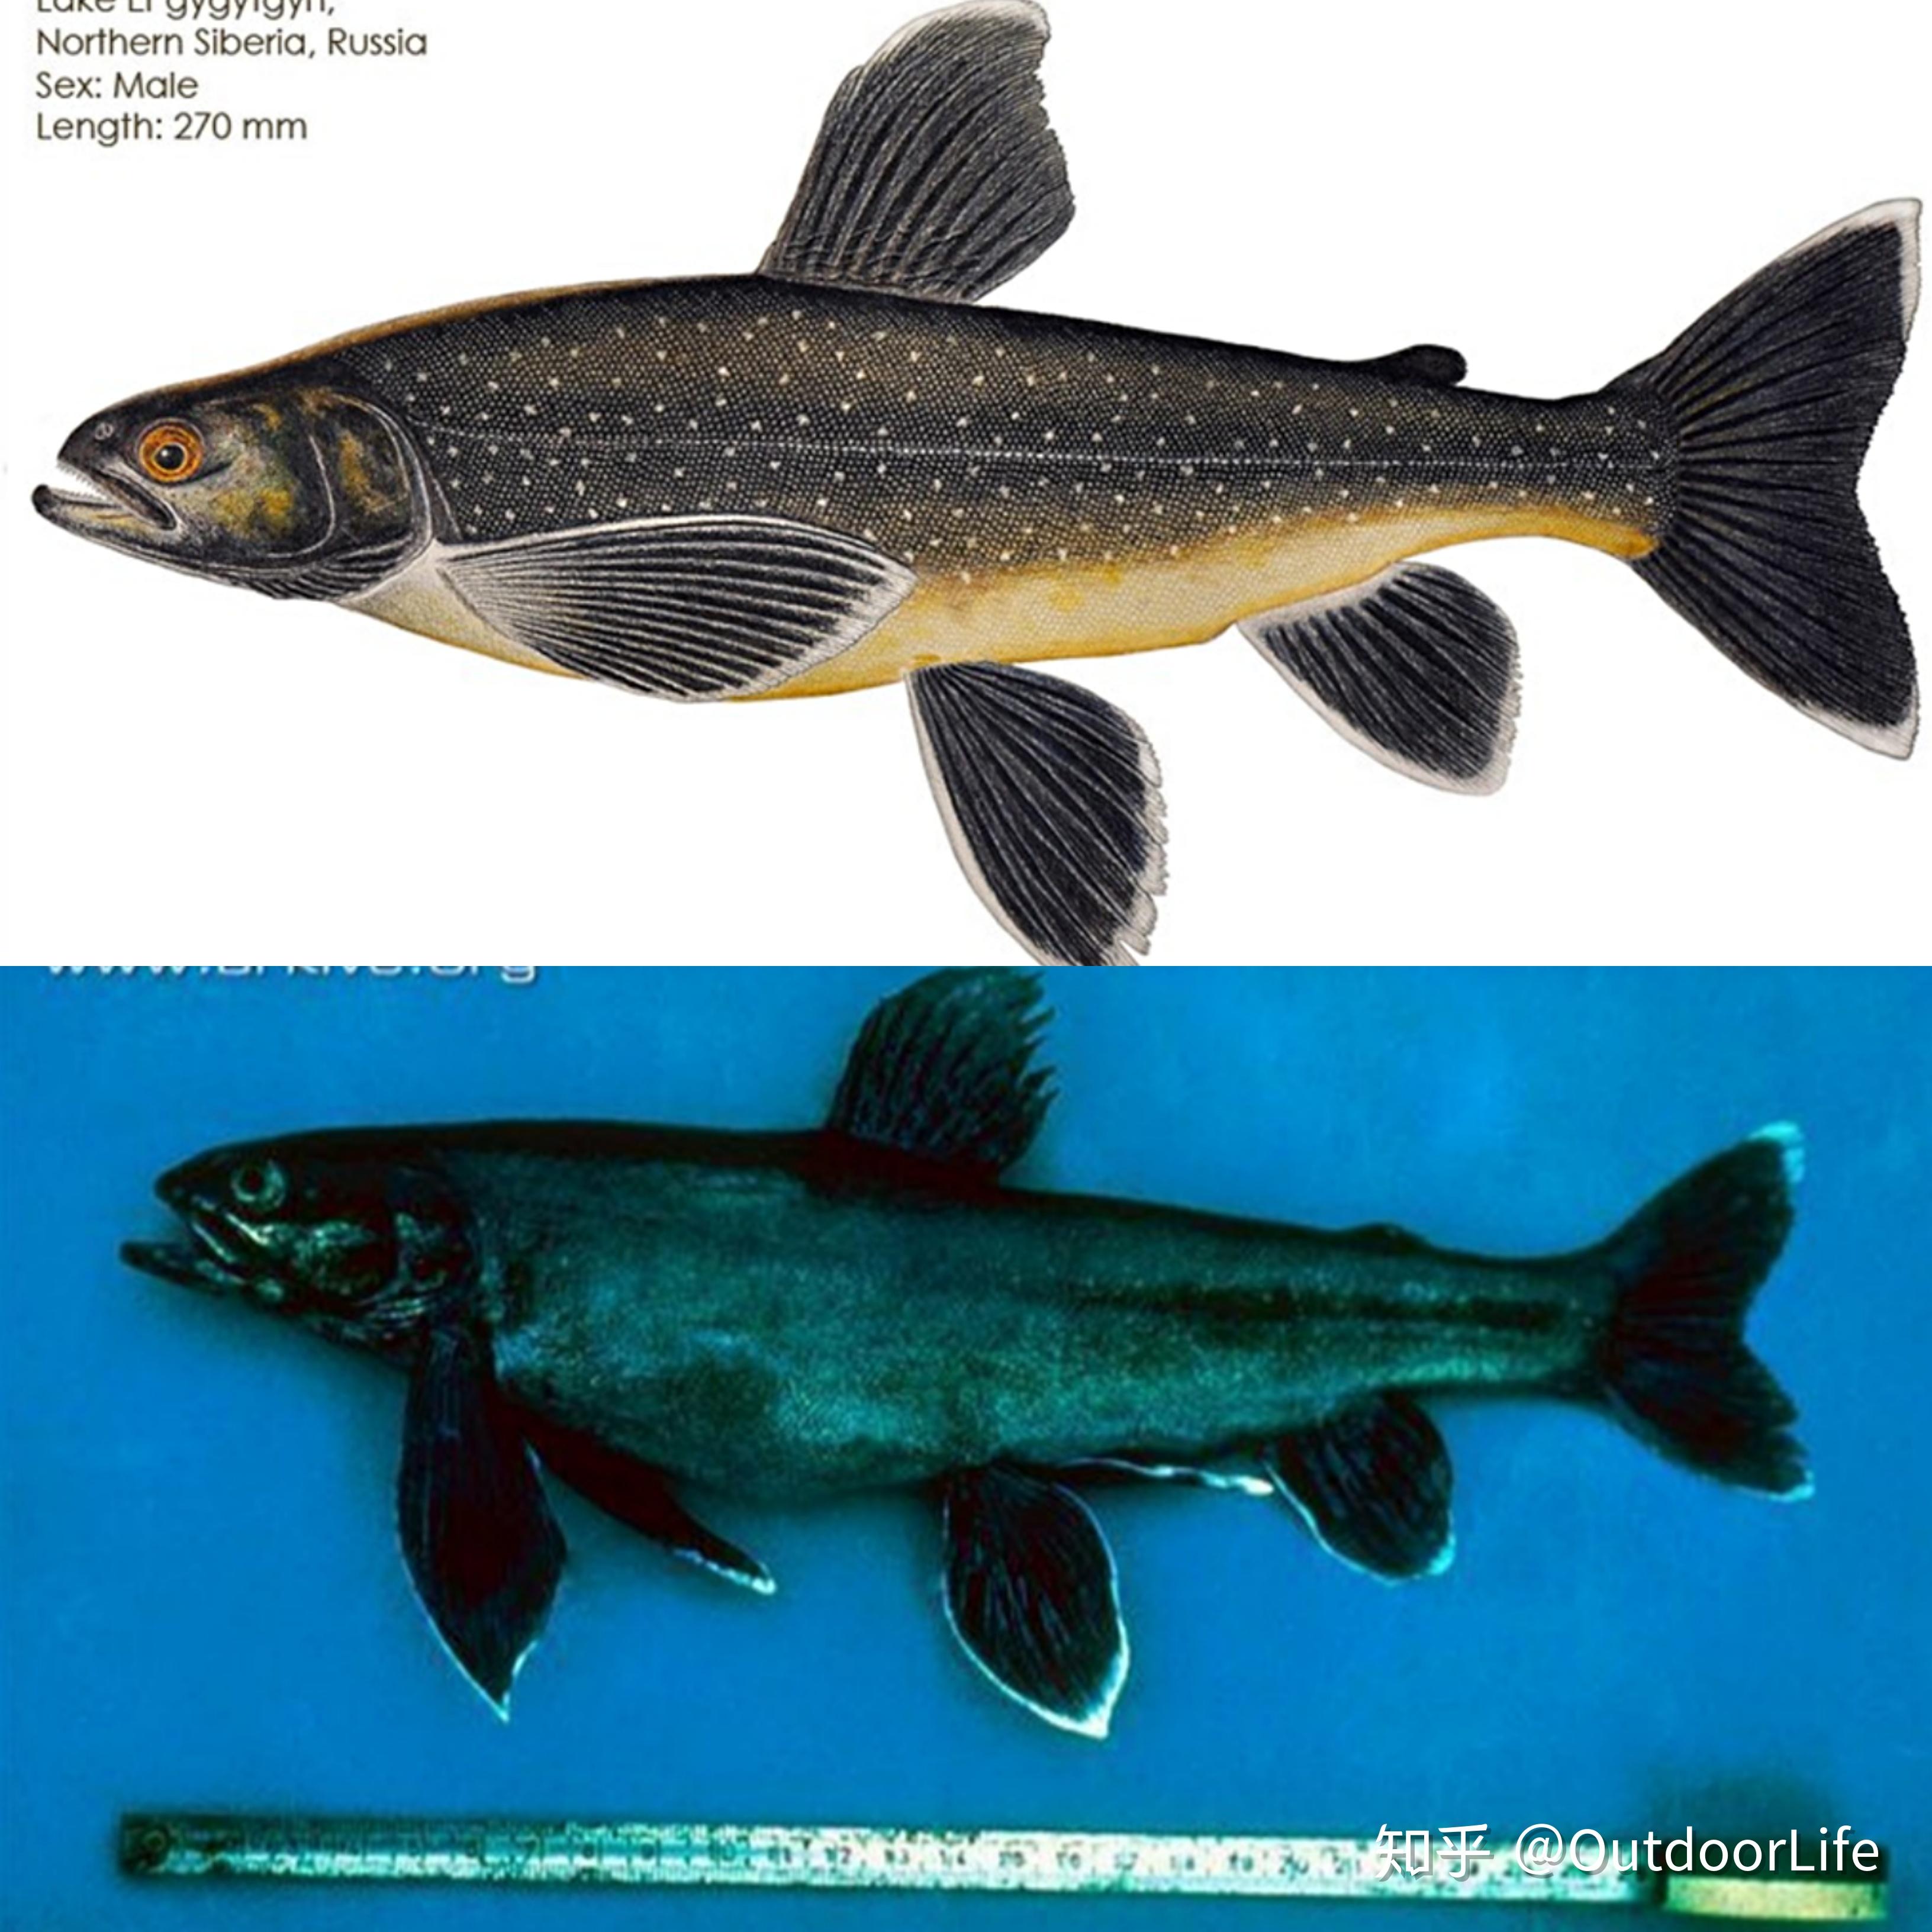 太平洋鲑鱼分类图片